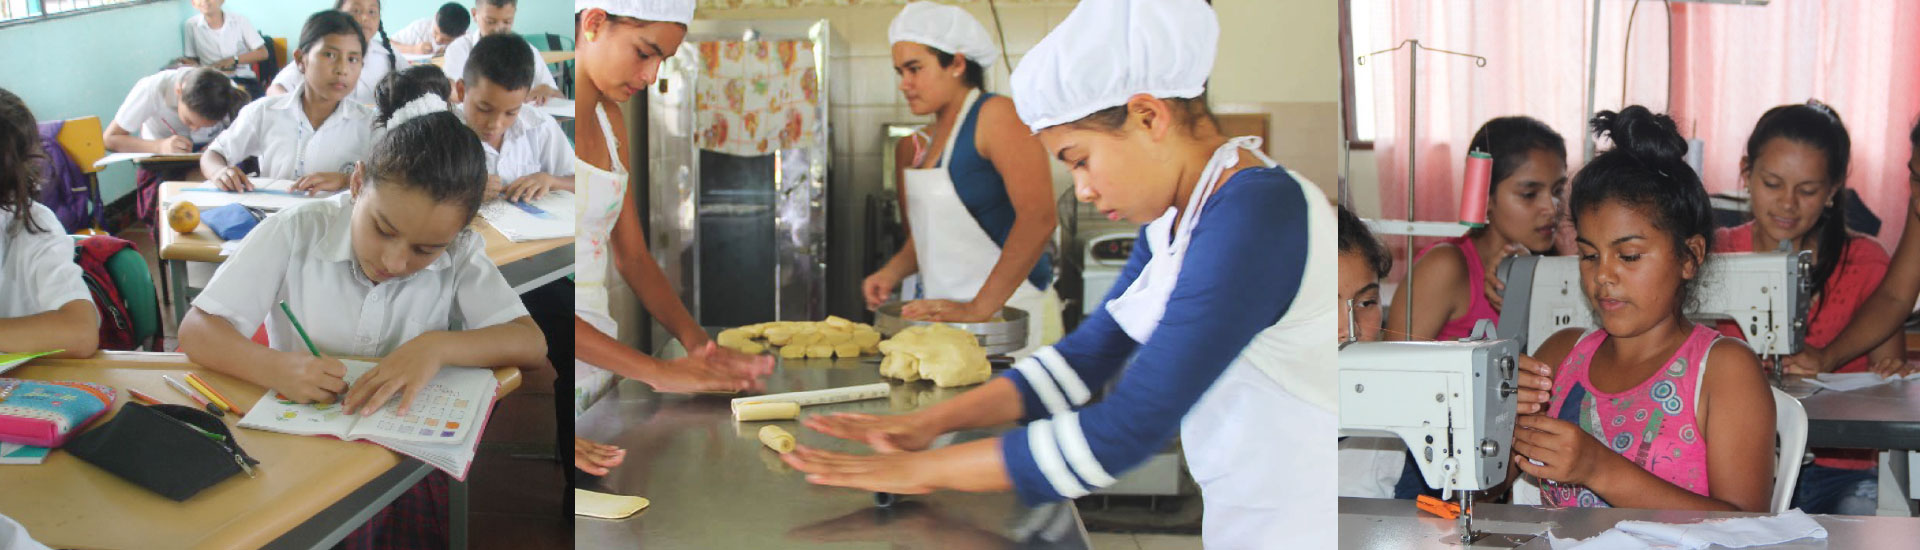 Educación, la herramienta para mejorar la vida de las niñas de Colombia - 2461